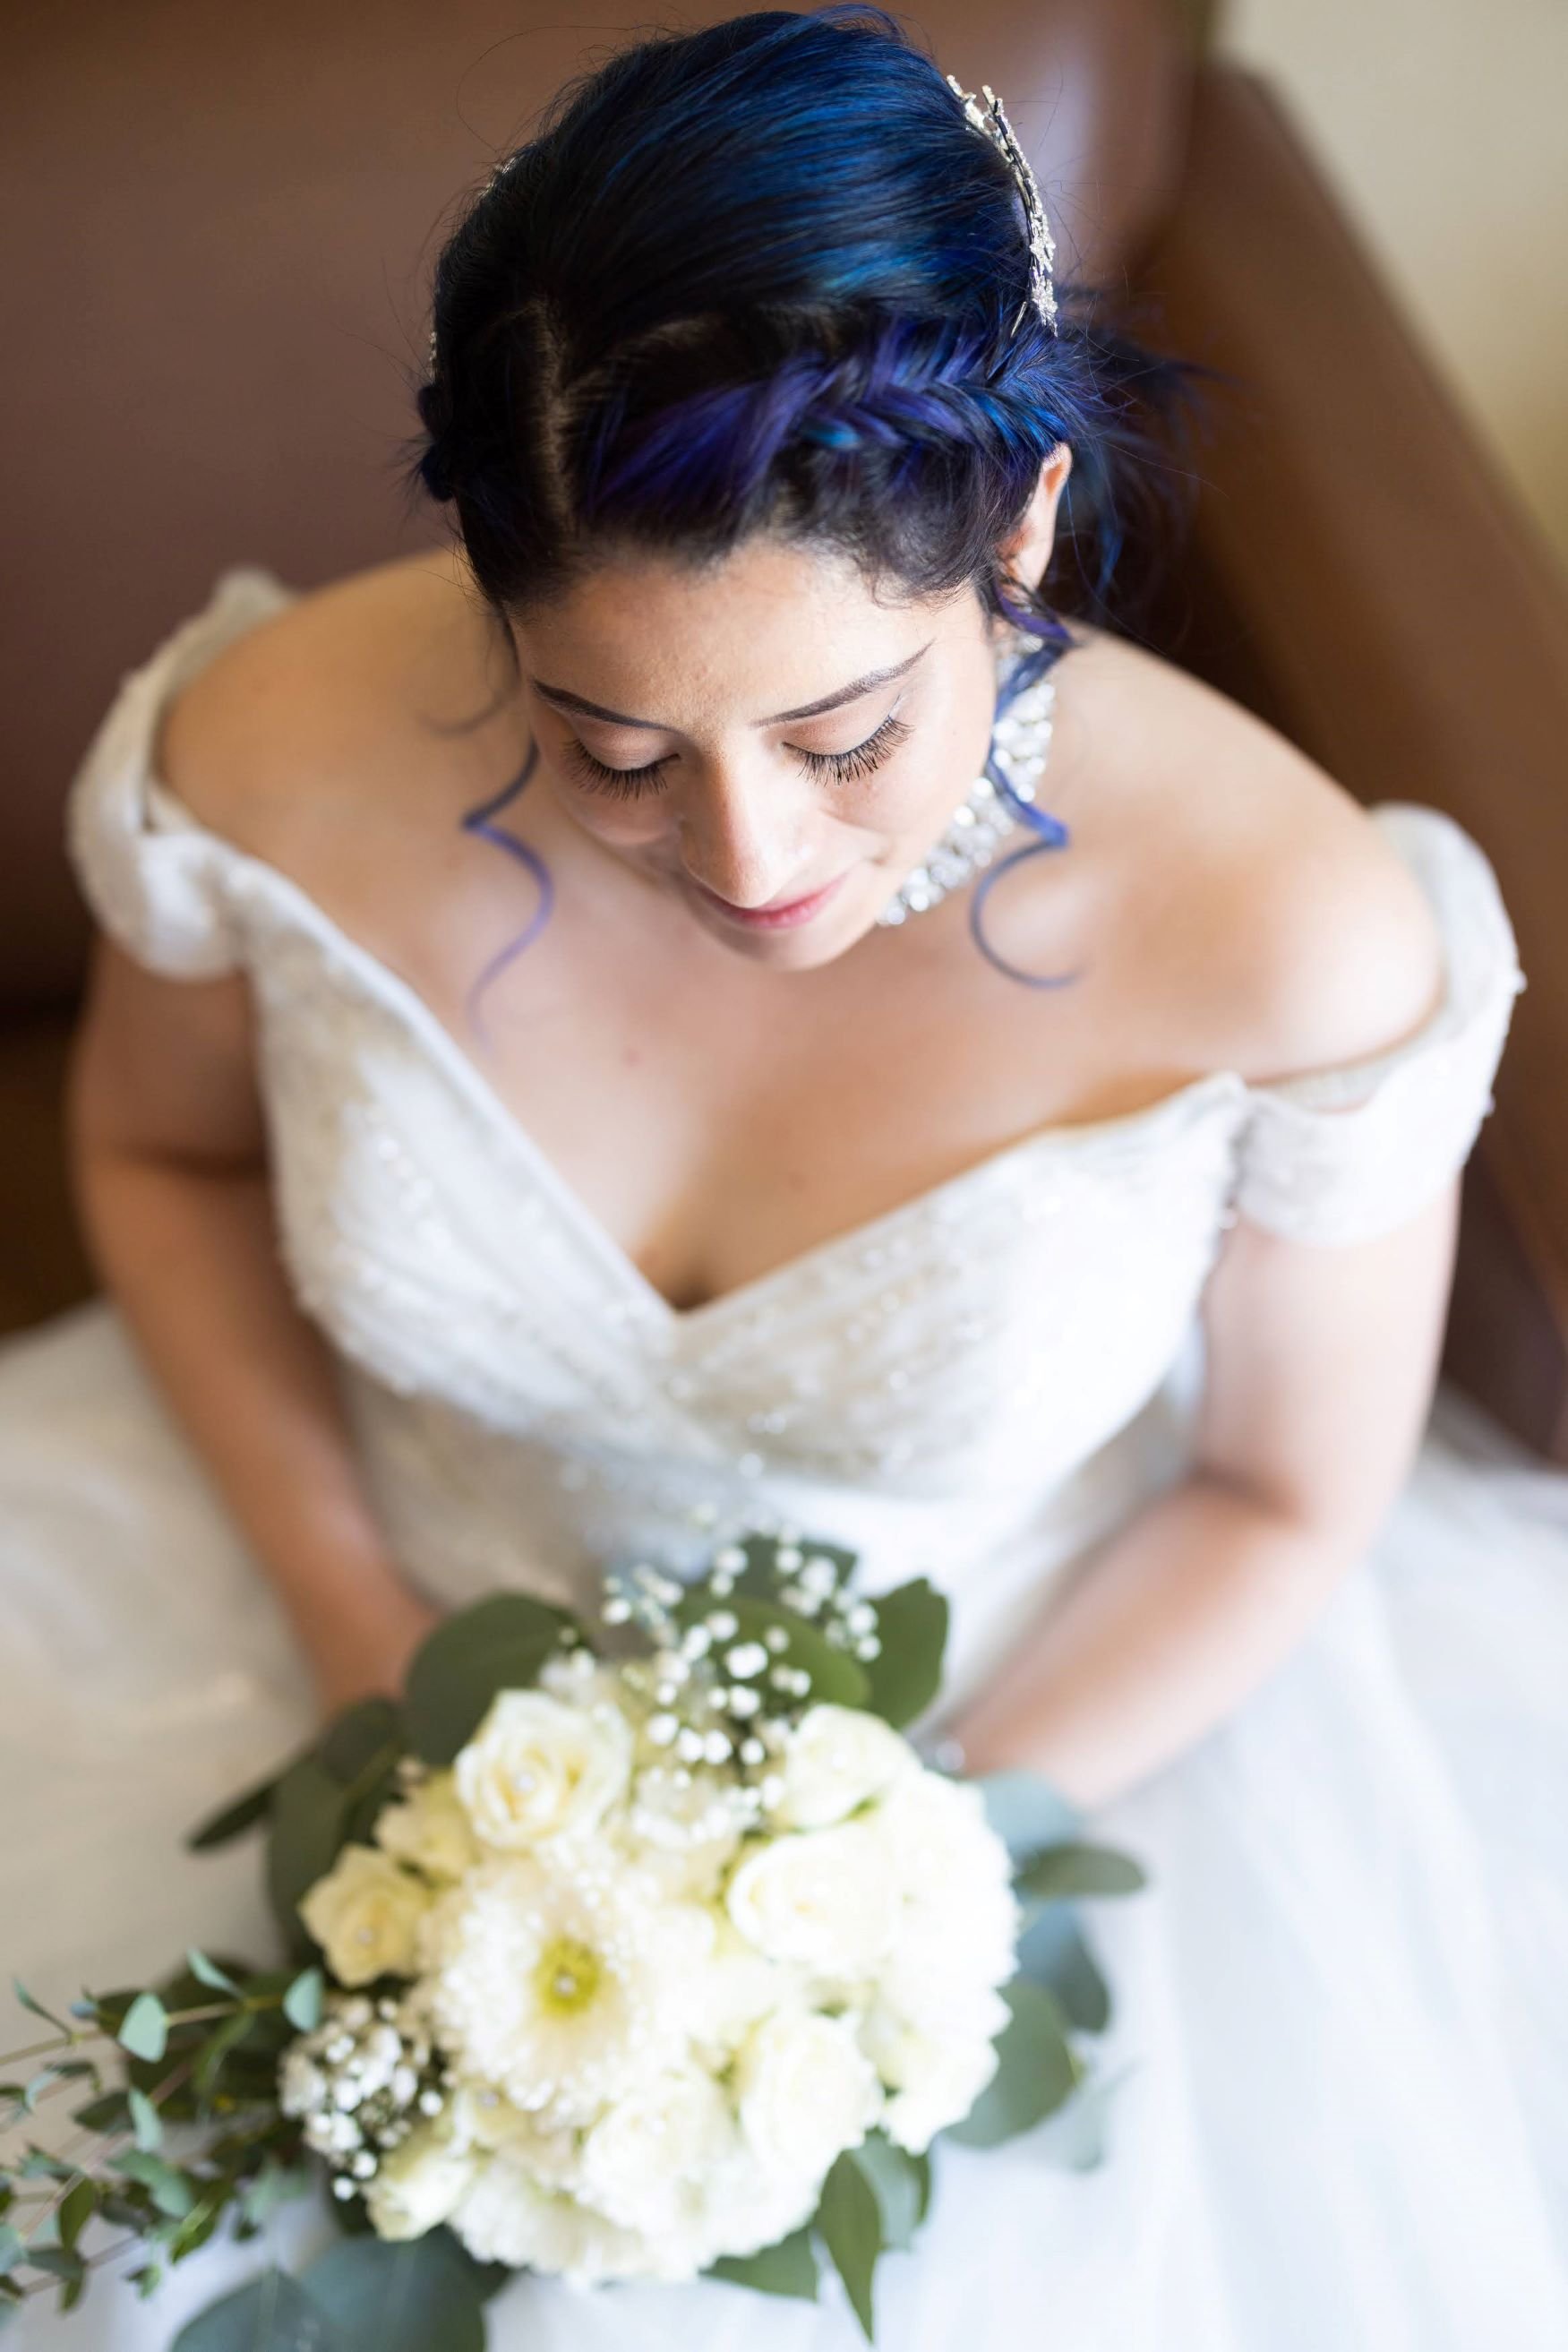 Bride looking at flowers.jpg